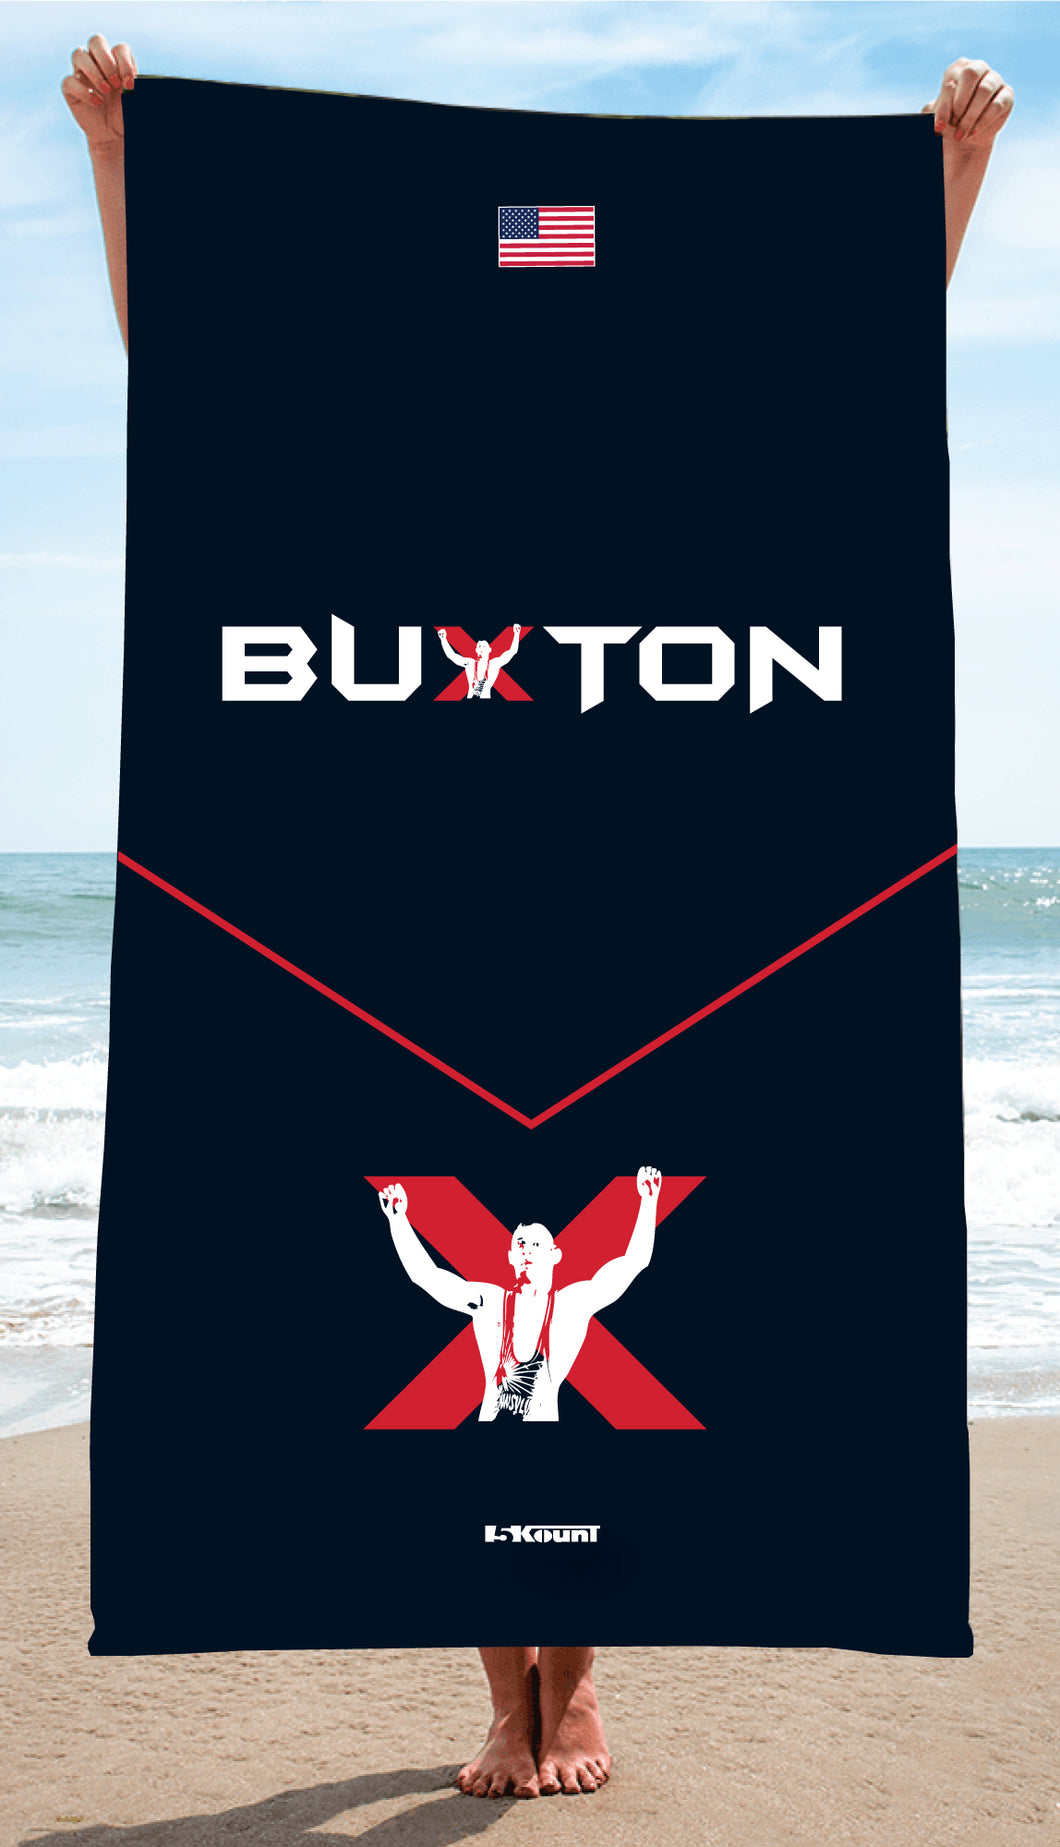 Buxton Sublimated Beach Towel - 5KounT2018